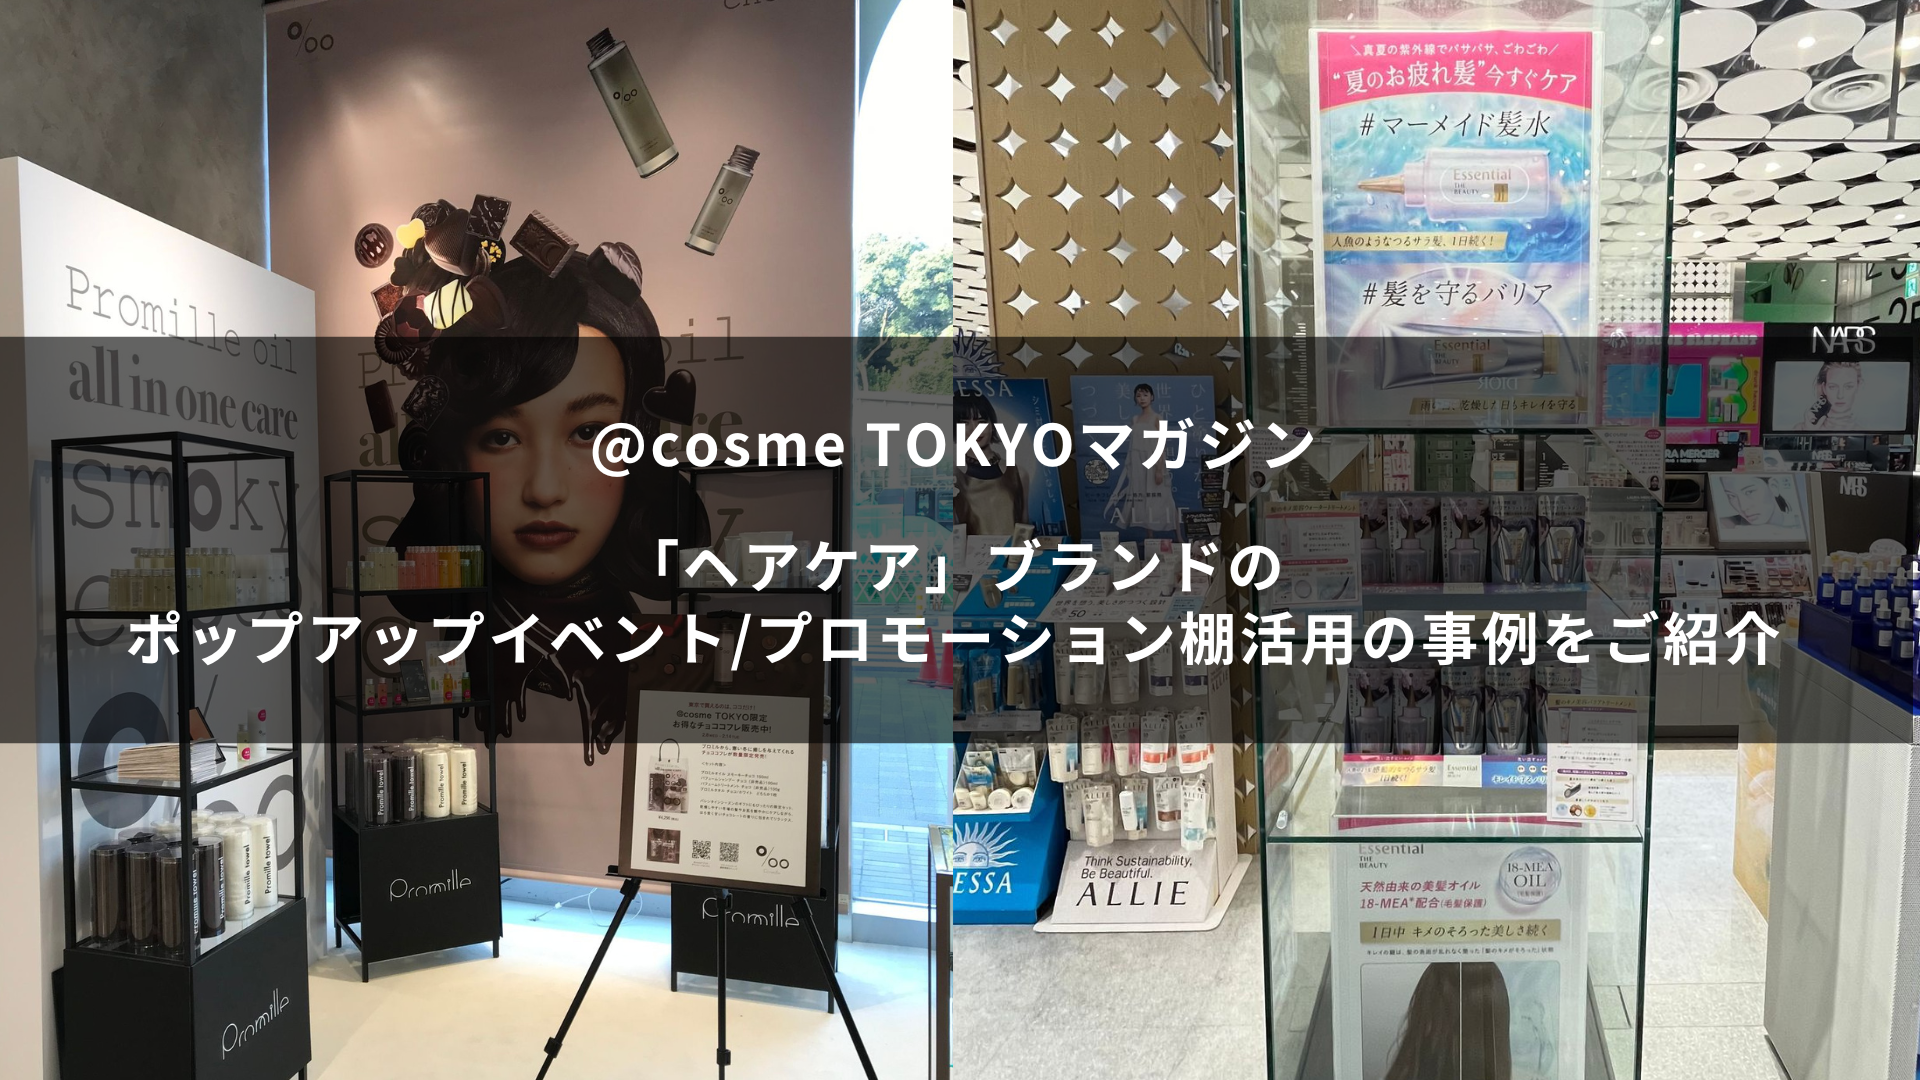 「ヘアケア」ブランドのポップアップイベント・プロモーション棚活用の事例をご紹介~@cosme TOKYOマガジン~ サムネイル画像